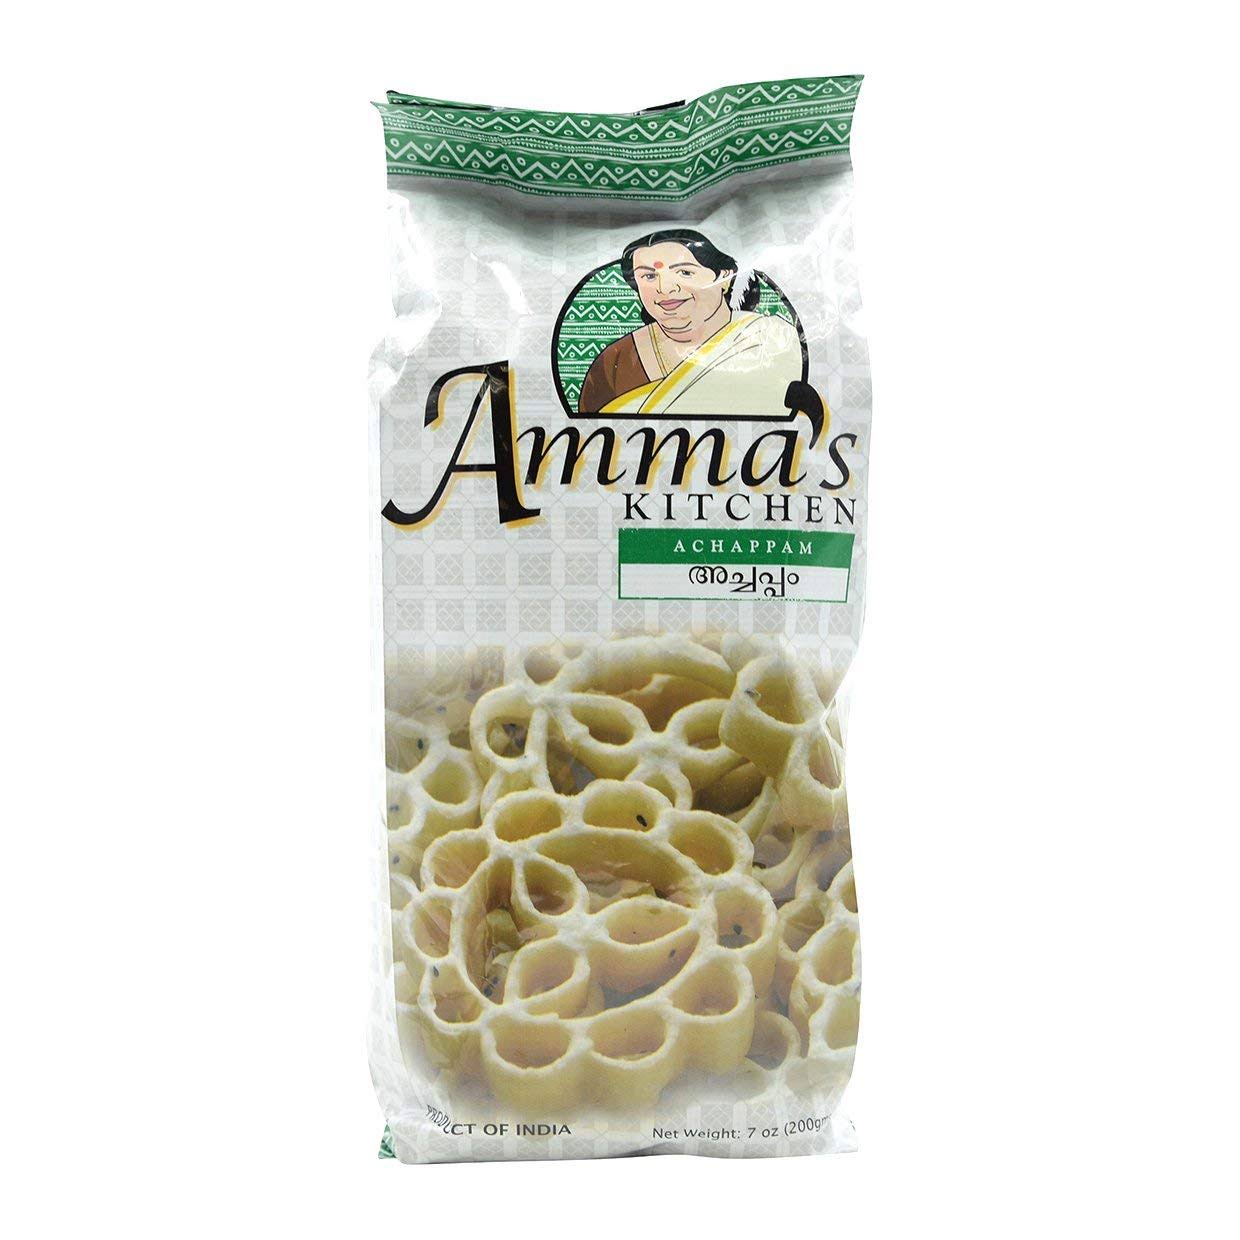 Amma's Kitchen - Achappam 7 oz